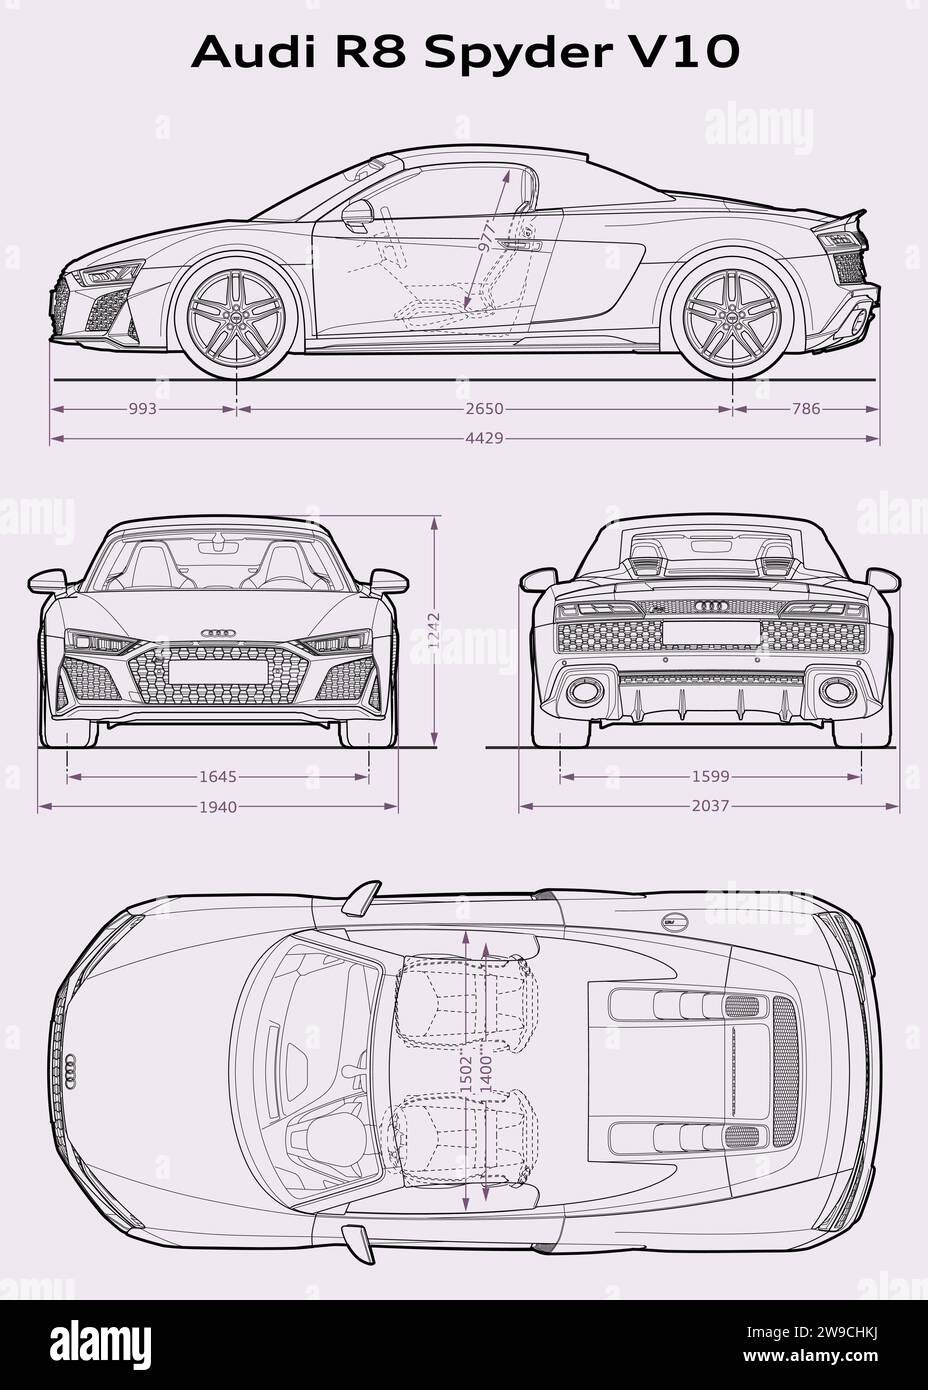 Audi R8 V10 Spider 2019 Plan de voiture Illustration de Vecteur